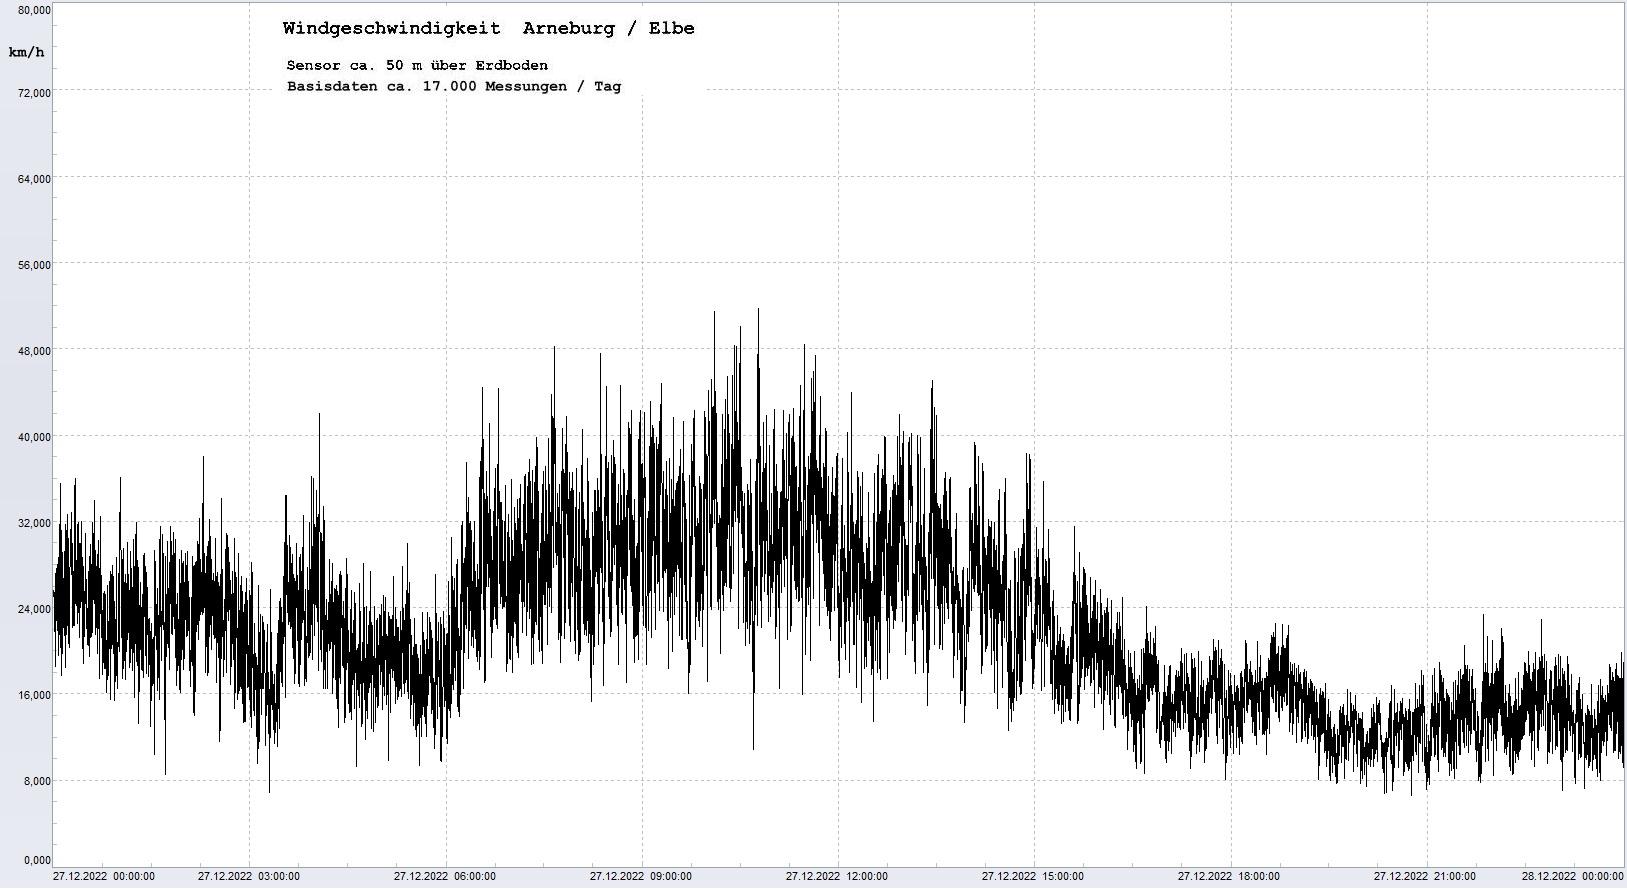 Arneburg Tages-Diagramm Winddaten, 27.12.2022
  Diagramm, Sensor auf Gebude, ca. 50 m ber Erdboden, Basis: 5s-Aufzeichnung